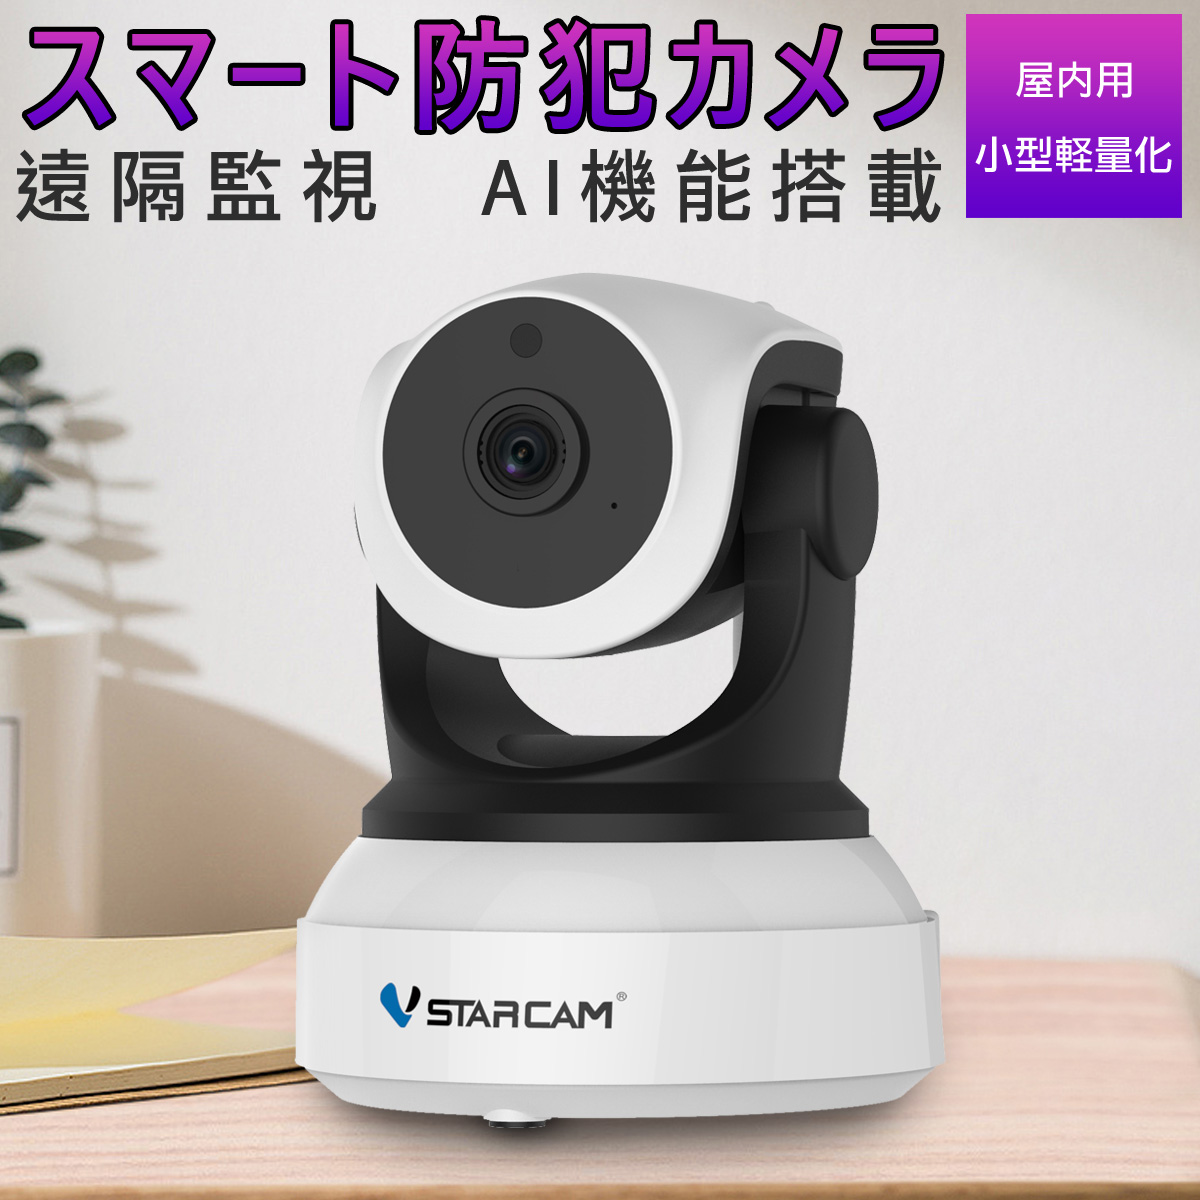 防犯カメラ ワイヤレス C24 VStarcam 100万画素 ONVIF対応 AI機能搭載 wifi 無線 人型フレーミング 人体追跡 人体検知 動体検知 MicroSDカード録画 録音 遠隔監視 赤ちゃん 子供 ペット 屋内用 IP カメラ 6ヶ月保証